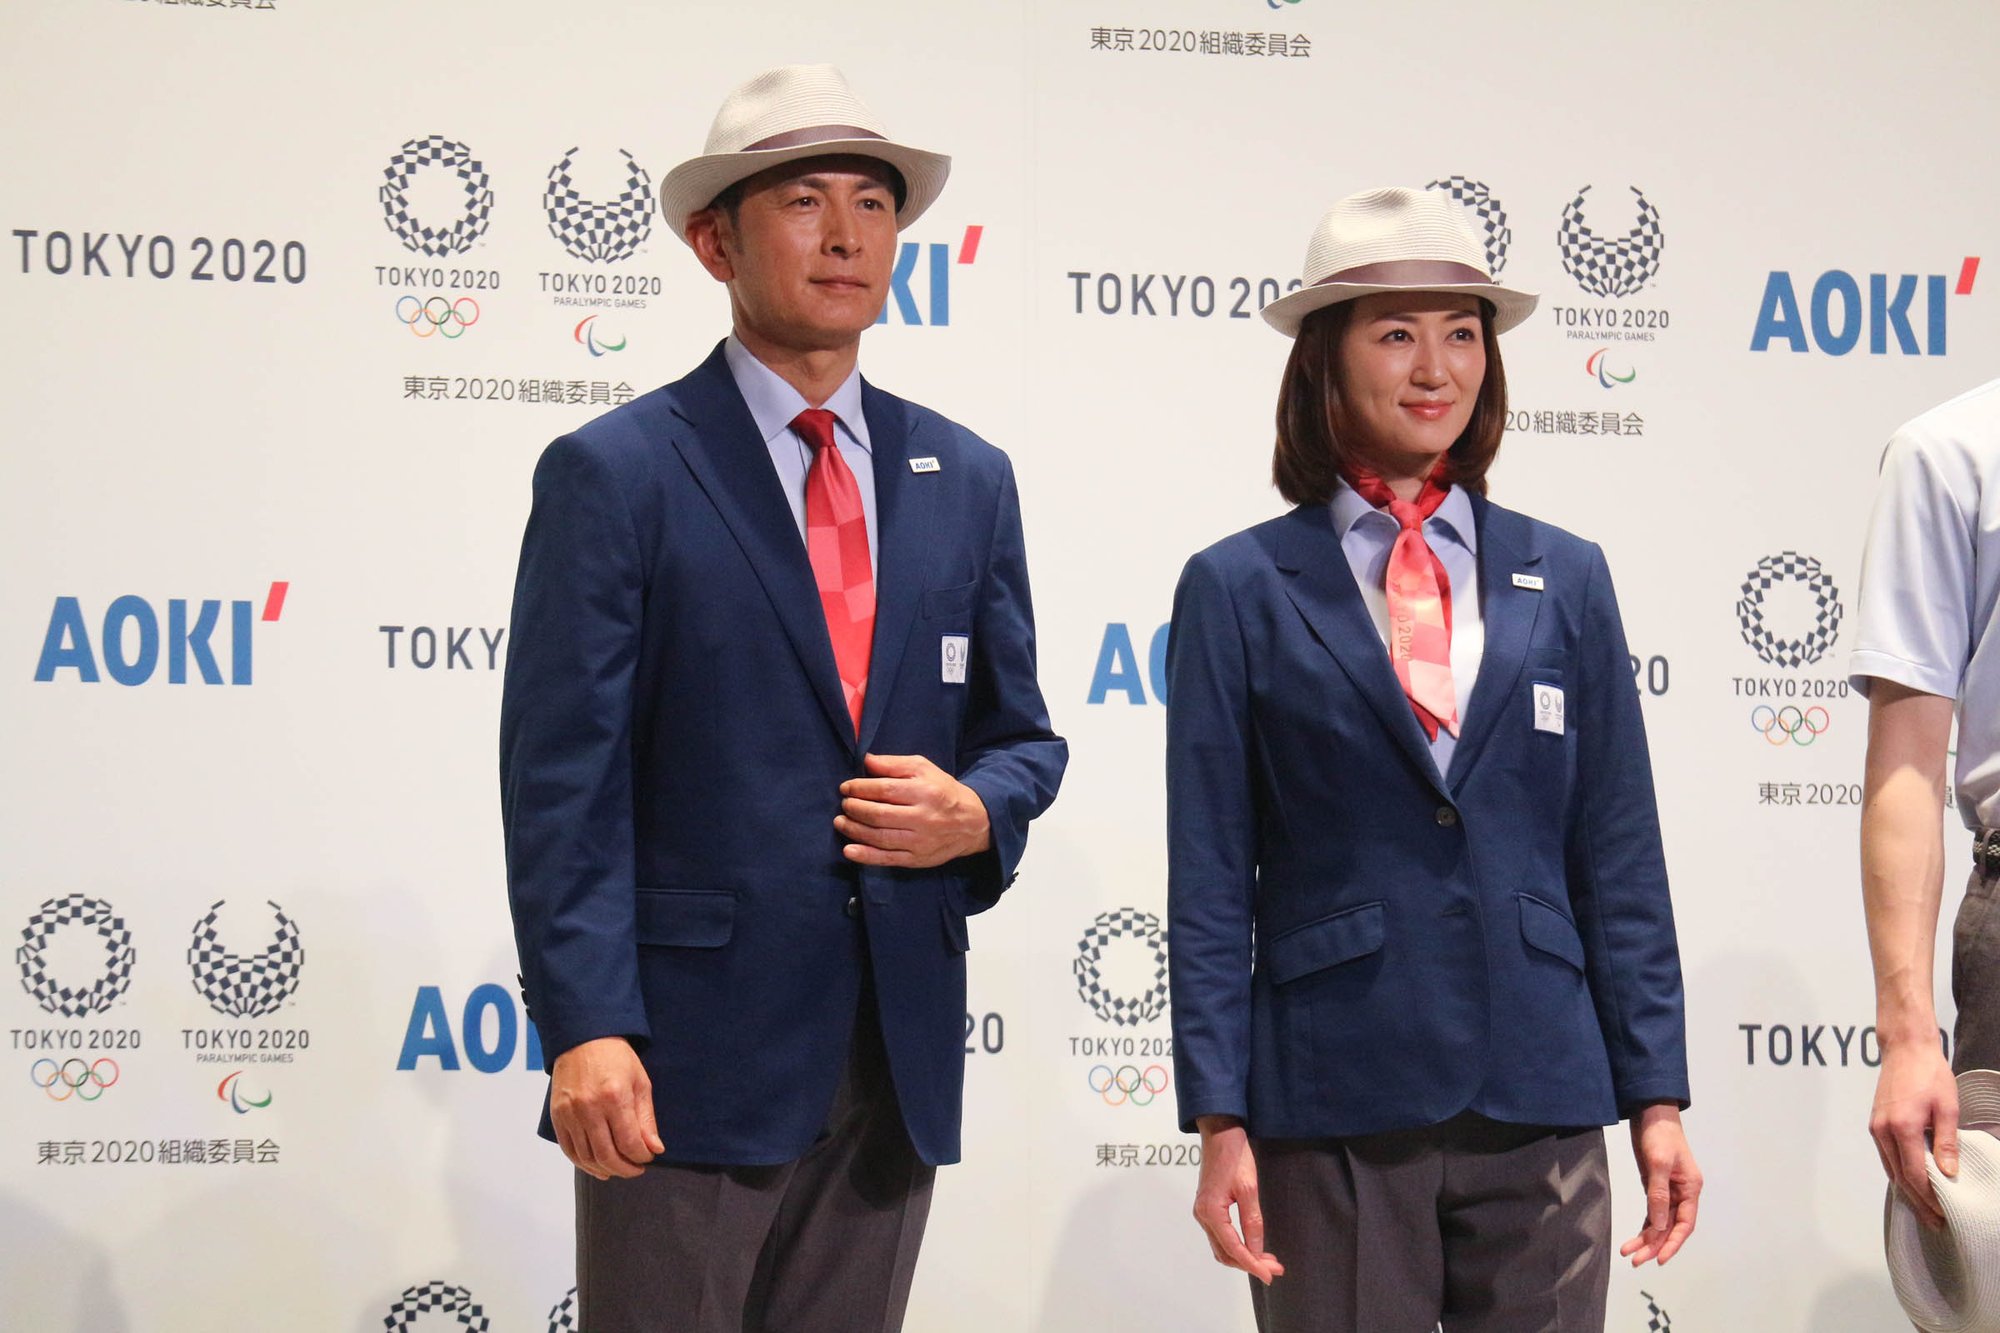 東京五輪審判員のユニフォーム2種が披露、フォーマルウェアでは女性の 